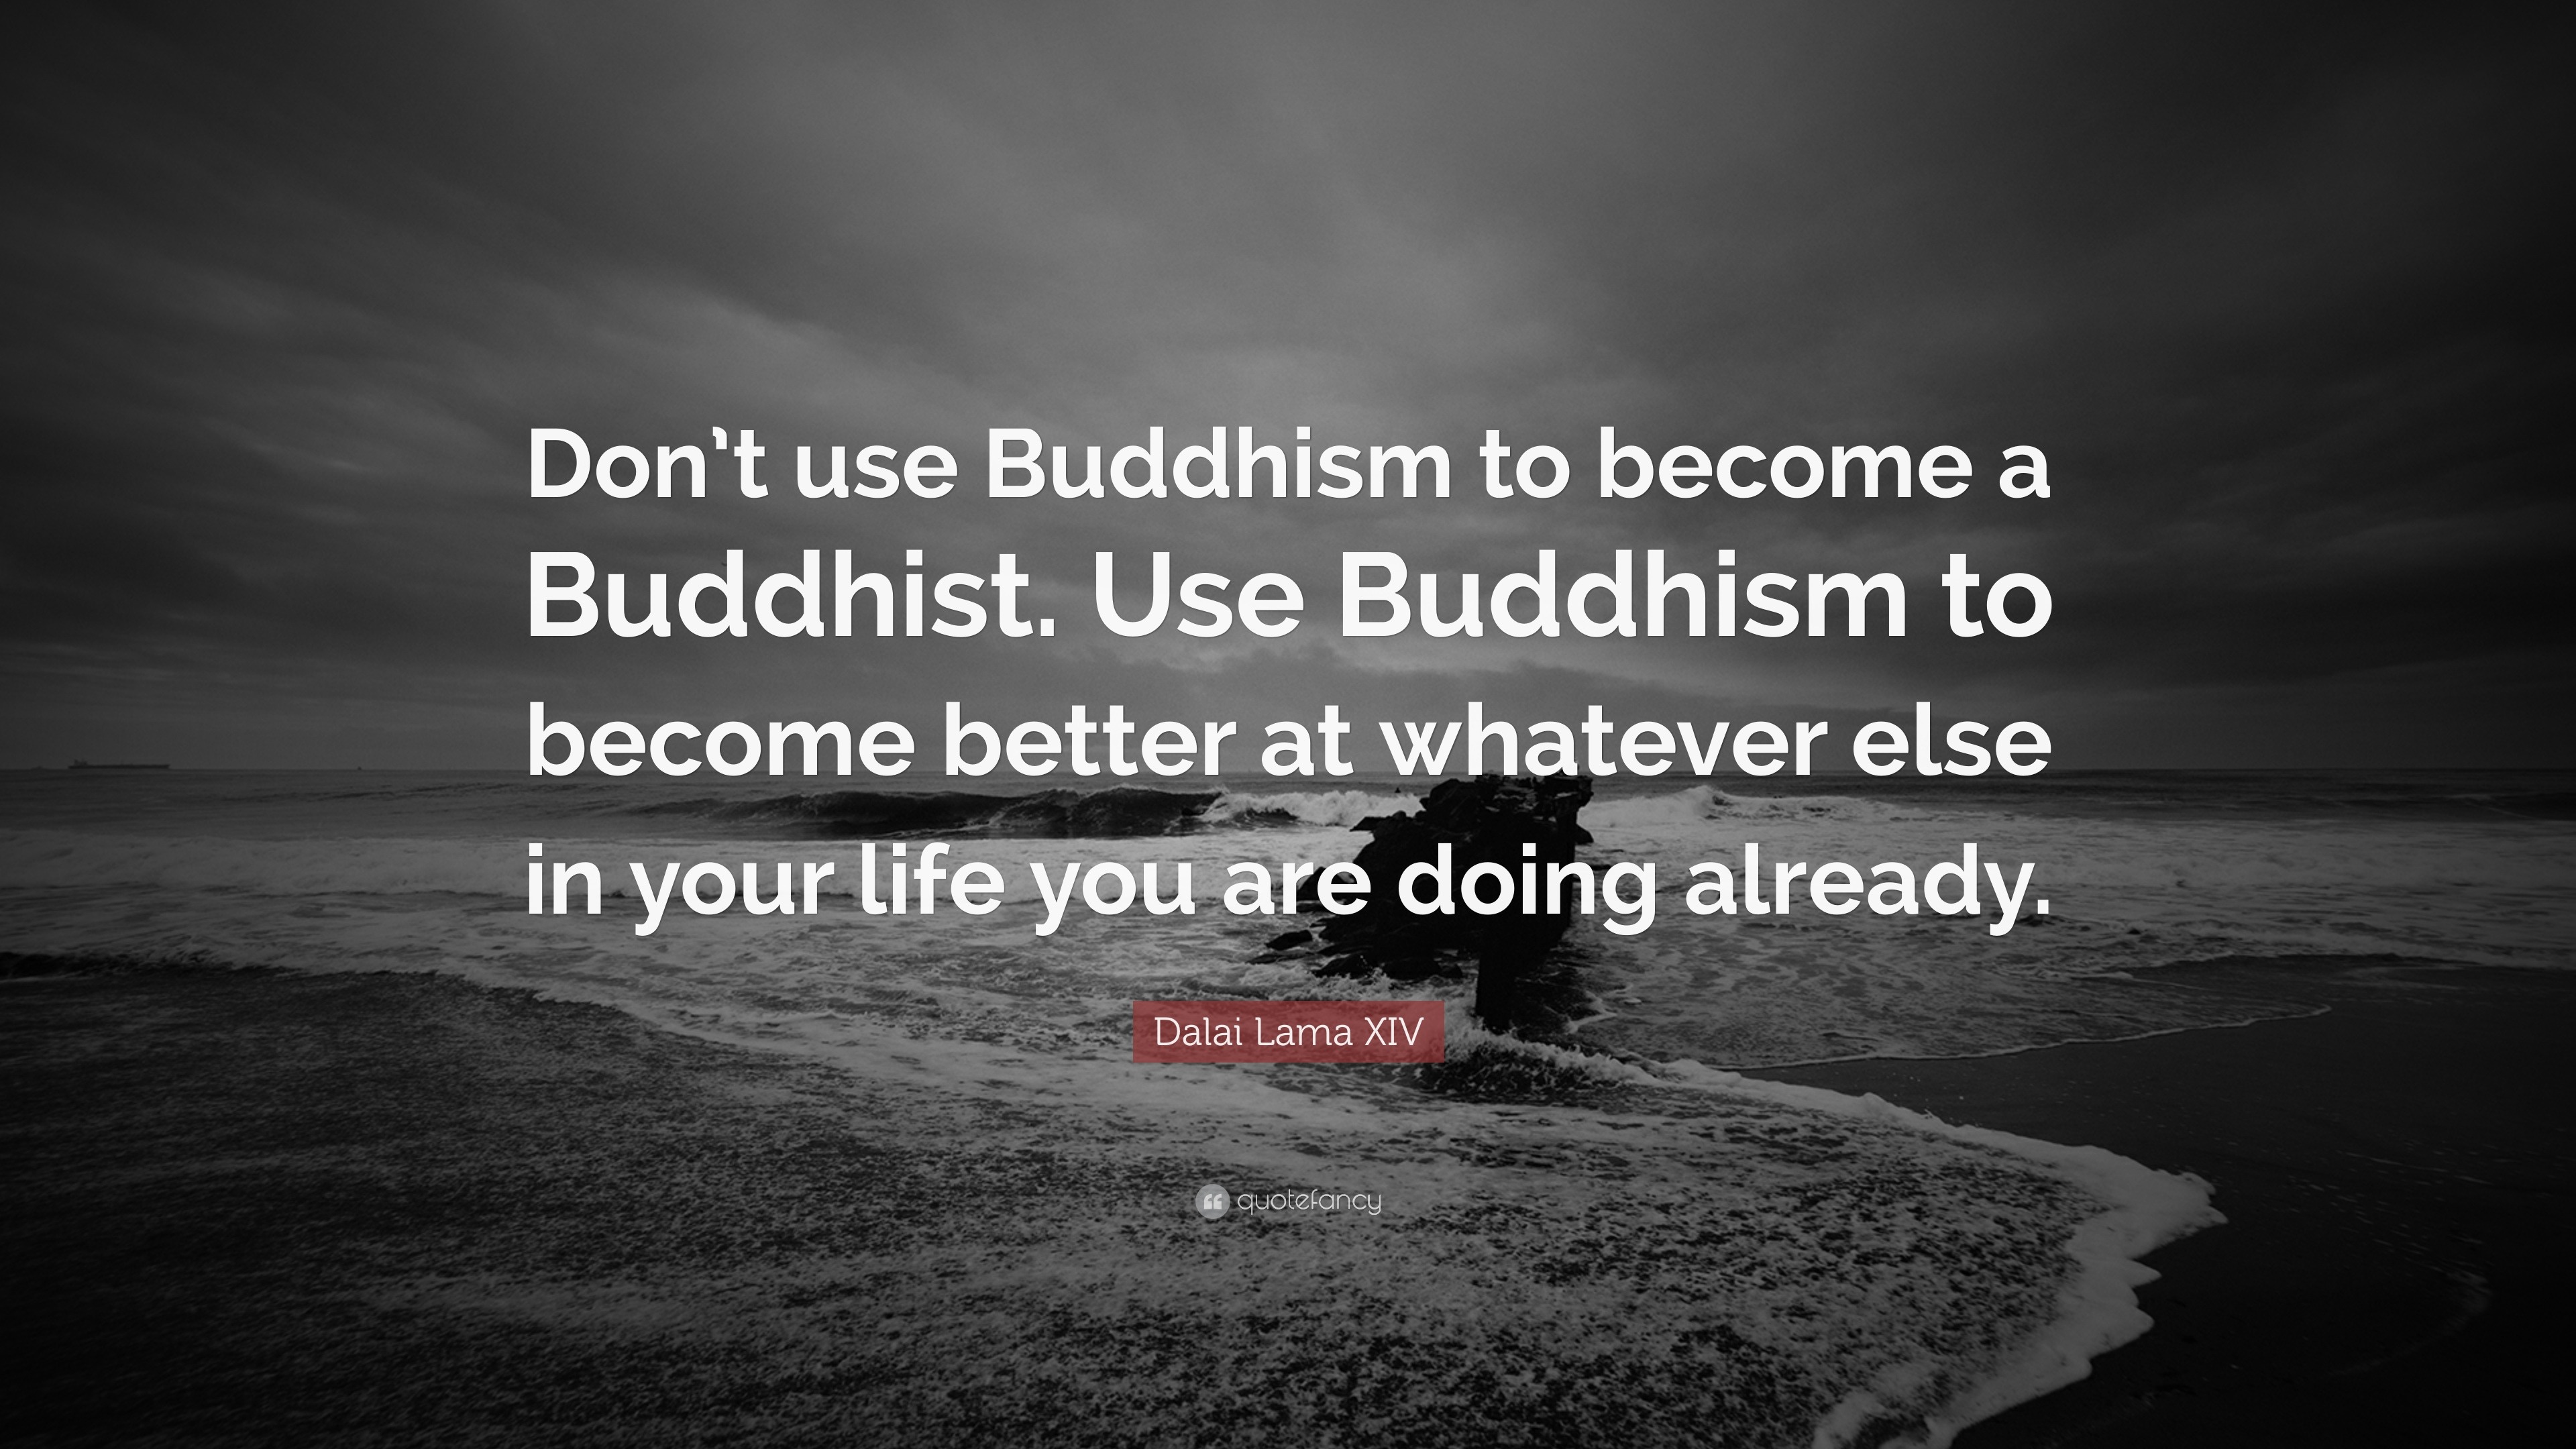 Dalai Lama XIV Quote “Don t use Buddhism to be e a Buddhist